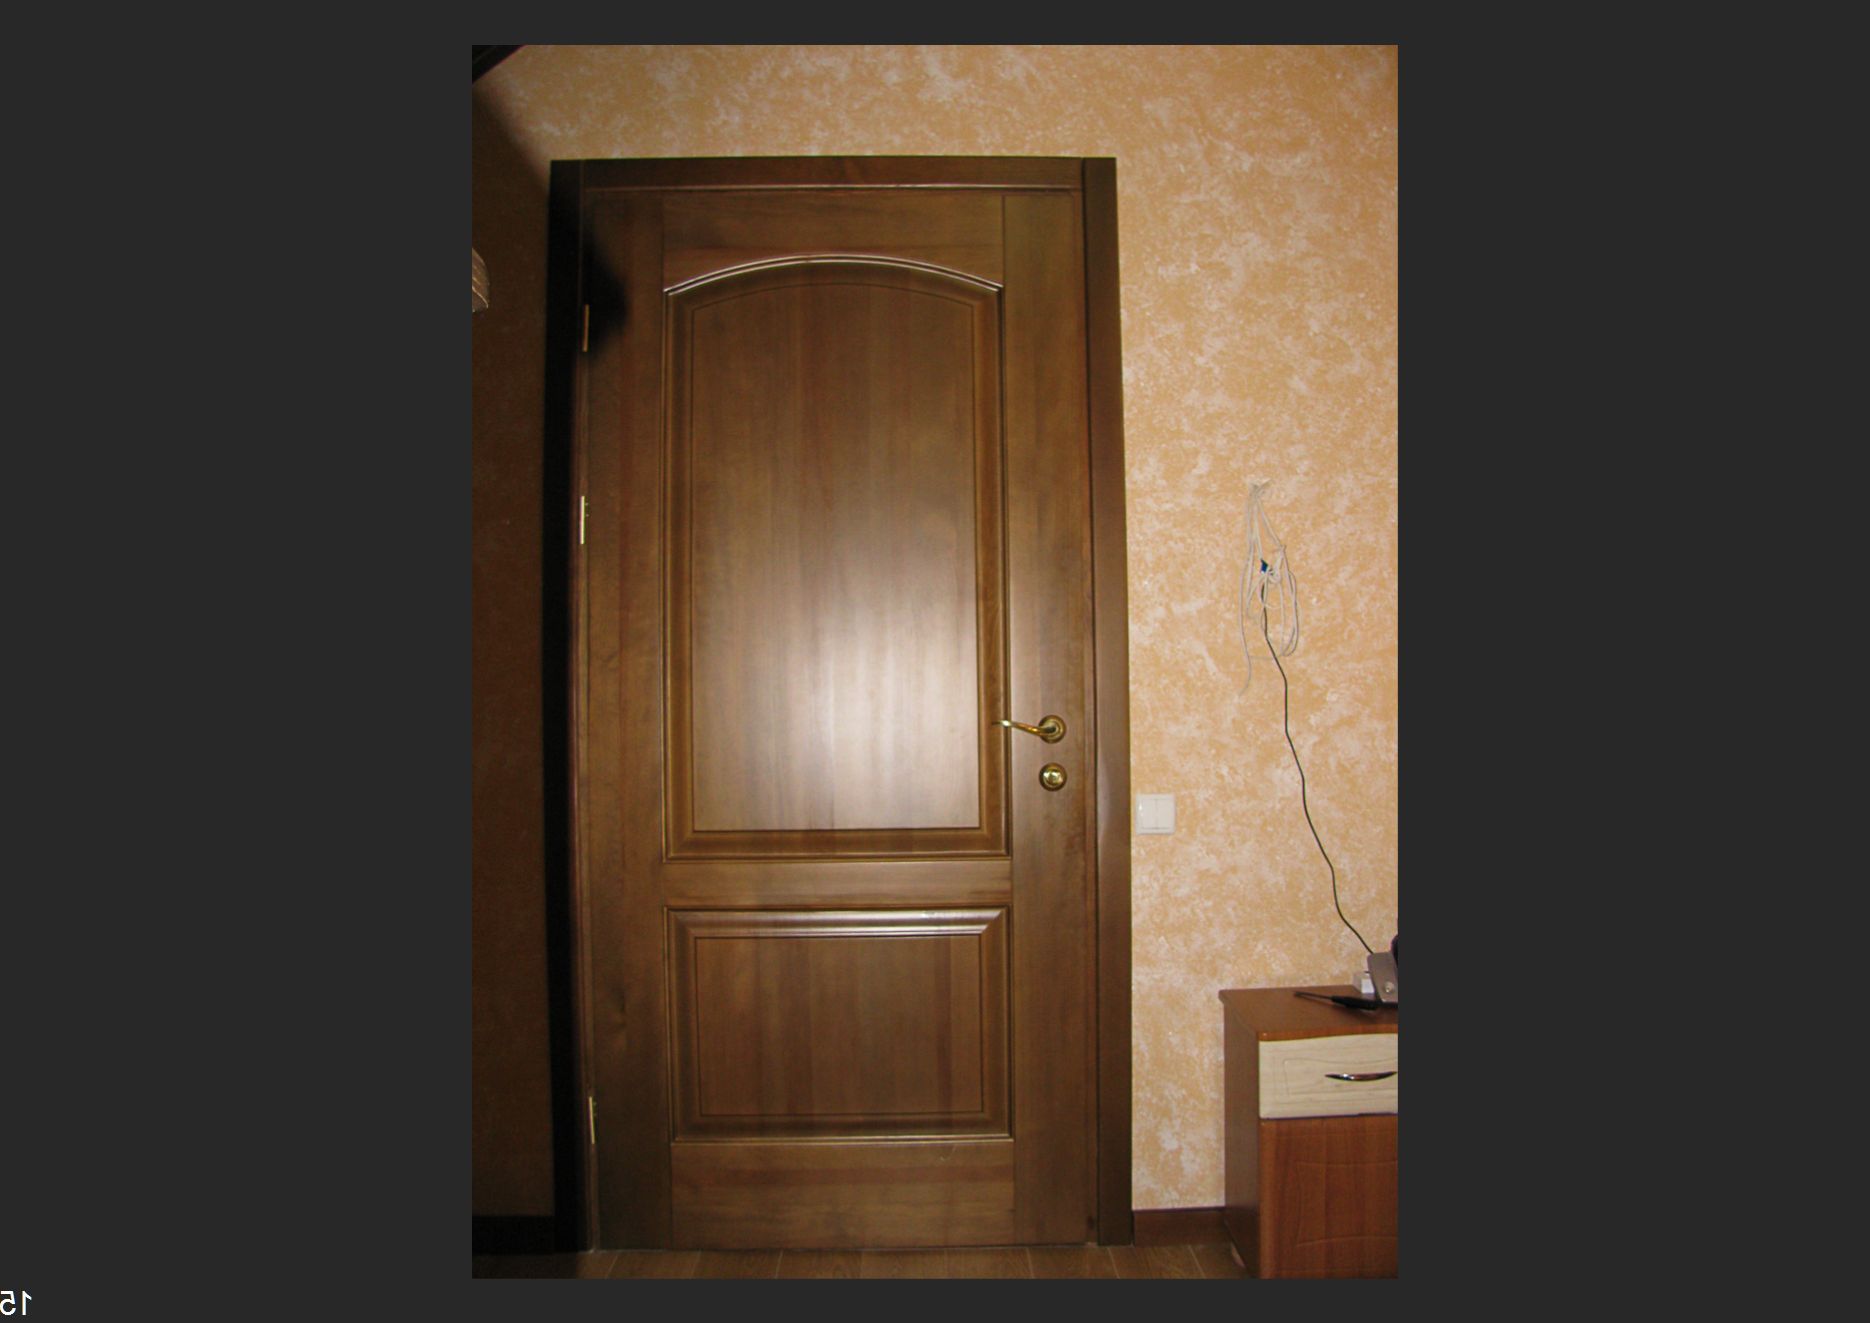 Hinged wooden interior door